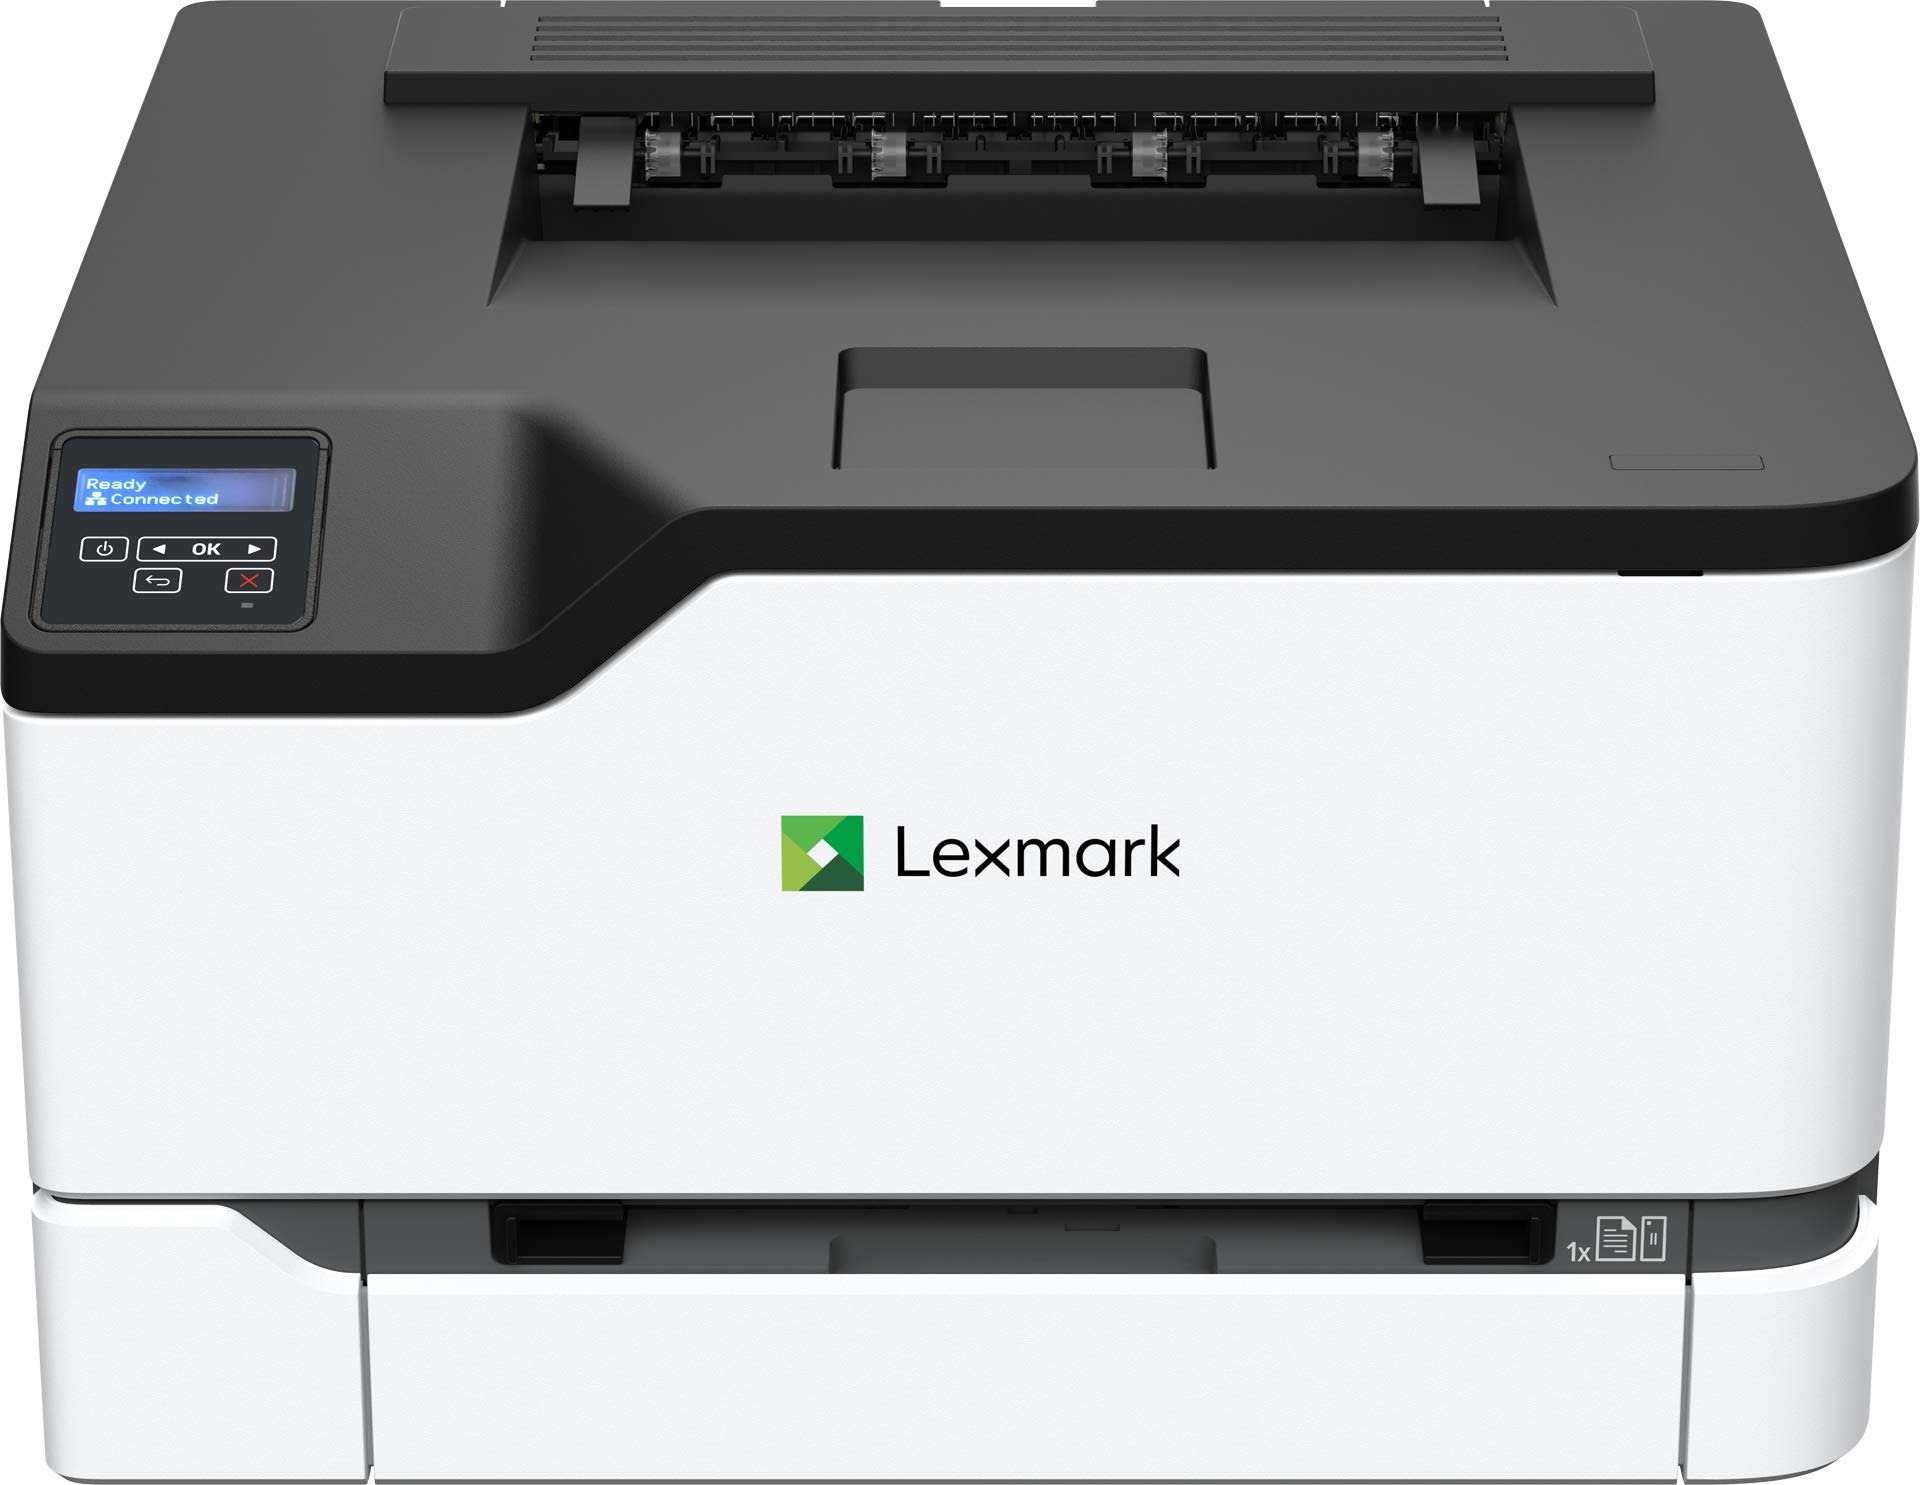 Lexmark C3224dw 彩色激光打印机，具有无线功能、标准双面打印、具有全谱安全性的两行 LCD 屏幕，打印速度高达 24 ppm (40N9000)，白色、灰色